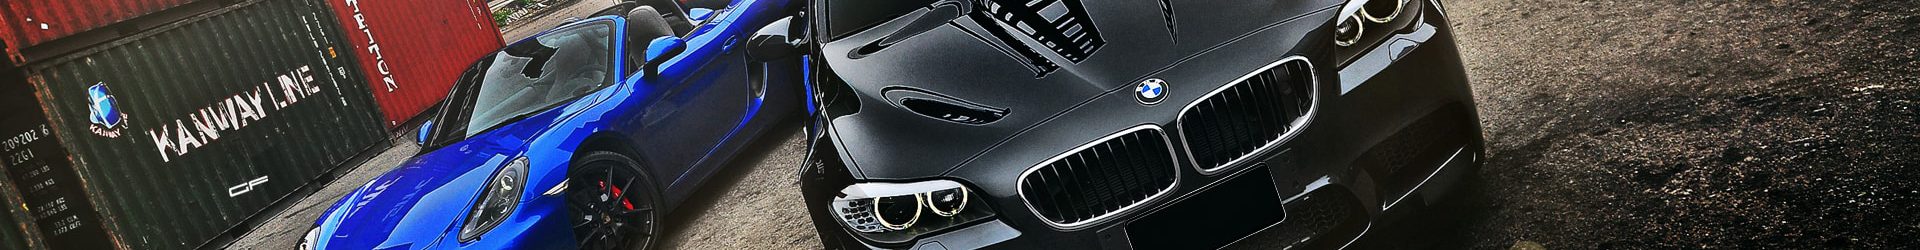 –大改添色– 特色 BMW E92 M3 Coupe 開箱拍攝